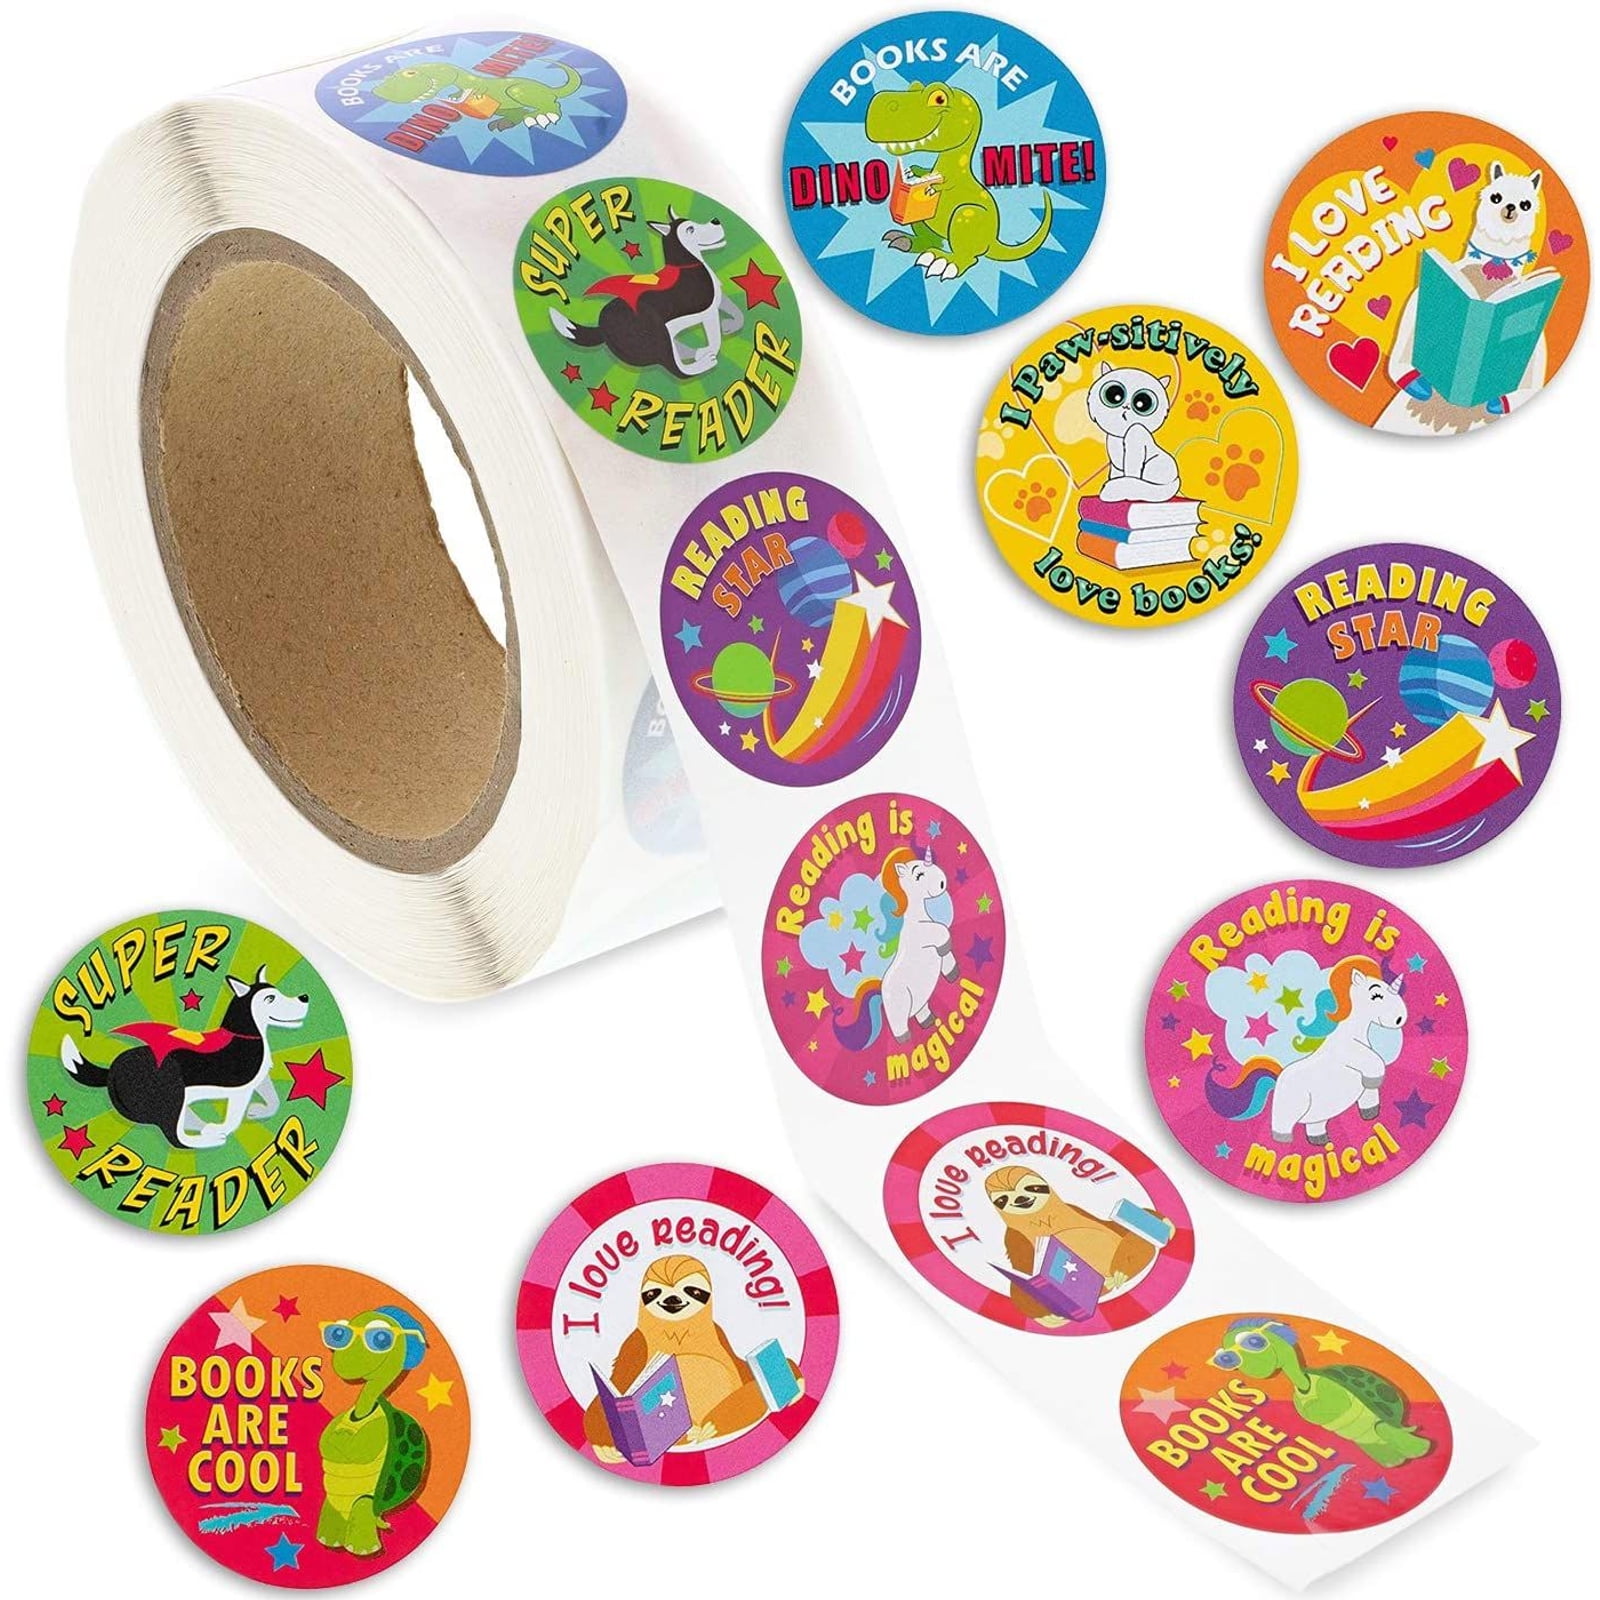 580 Stickers-Kids Motivation Merit Praise Reward School Teacher-18 design styles 